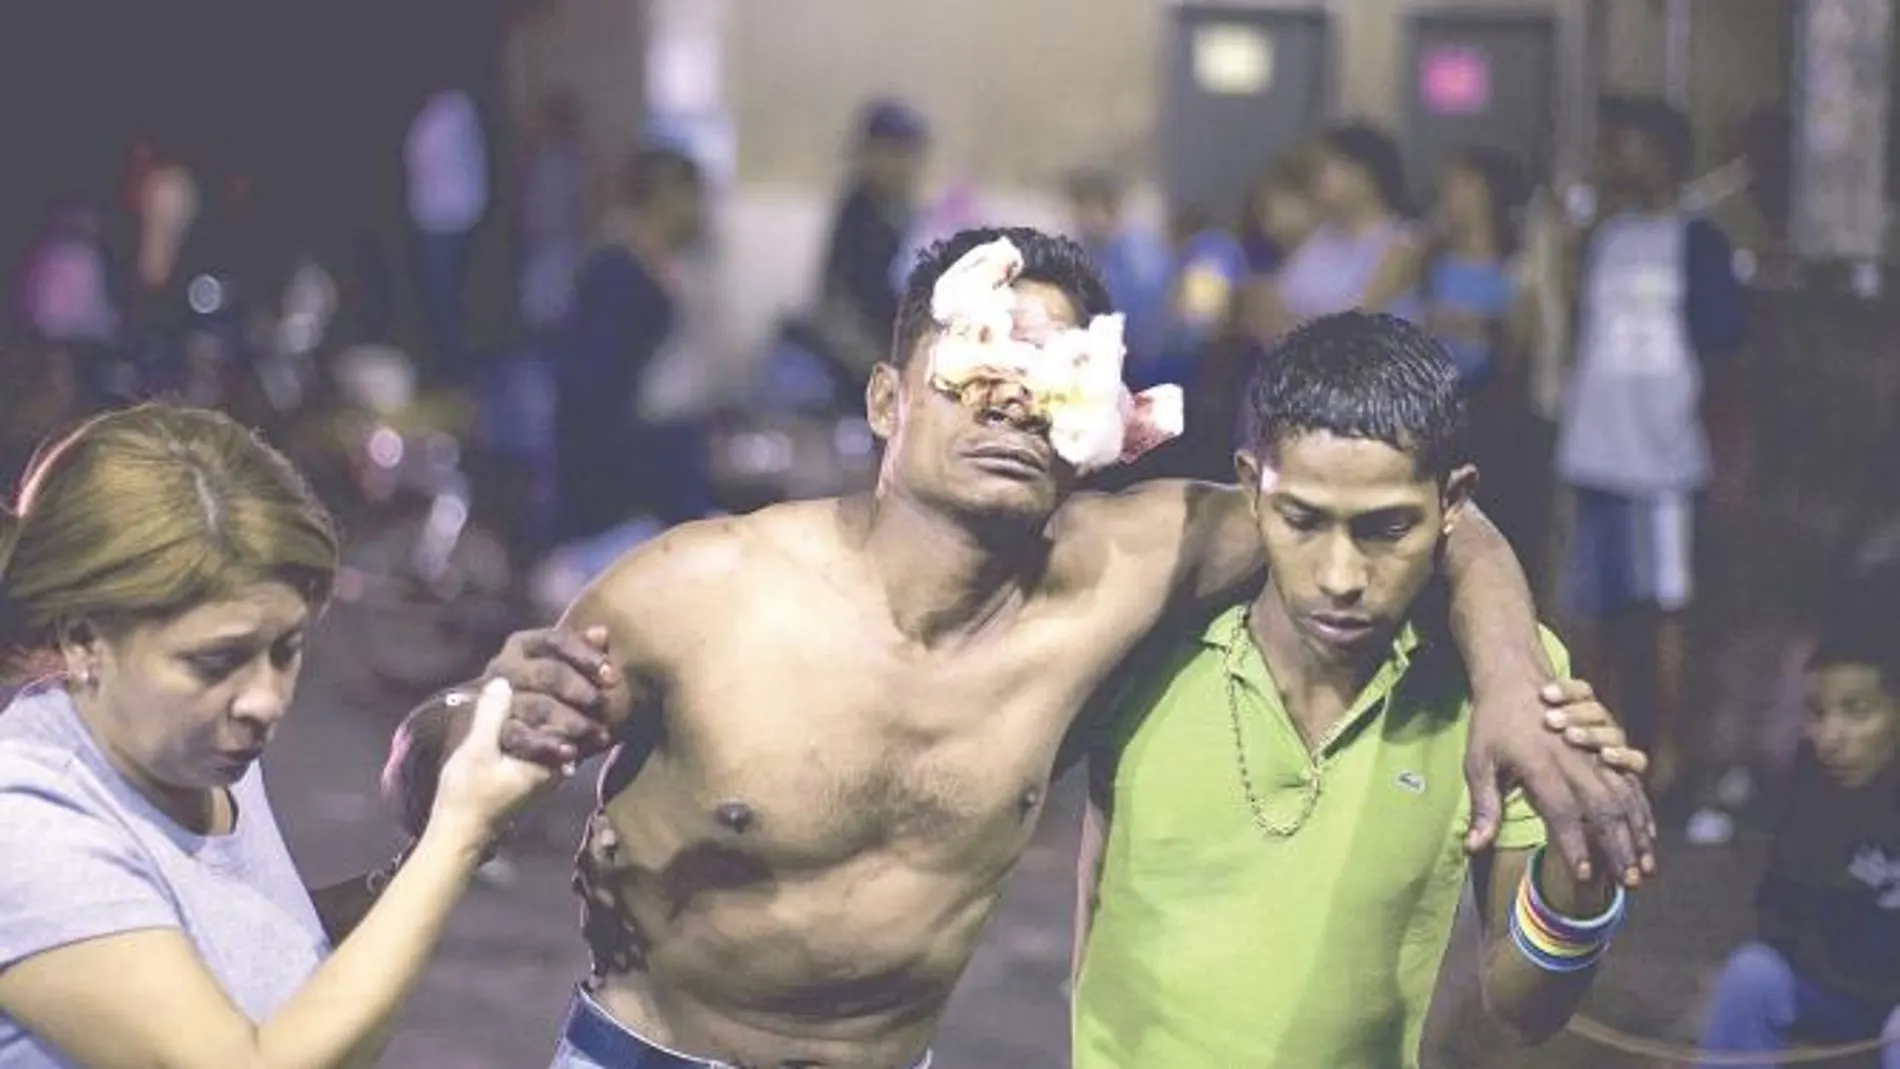 La violencia es habitual en las calles de Venezuela, donde recomiendan, de noche, no pararse ni ante la Policía